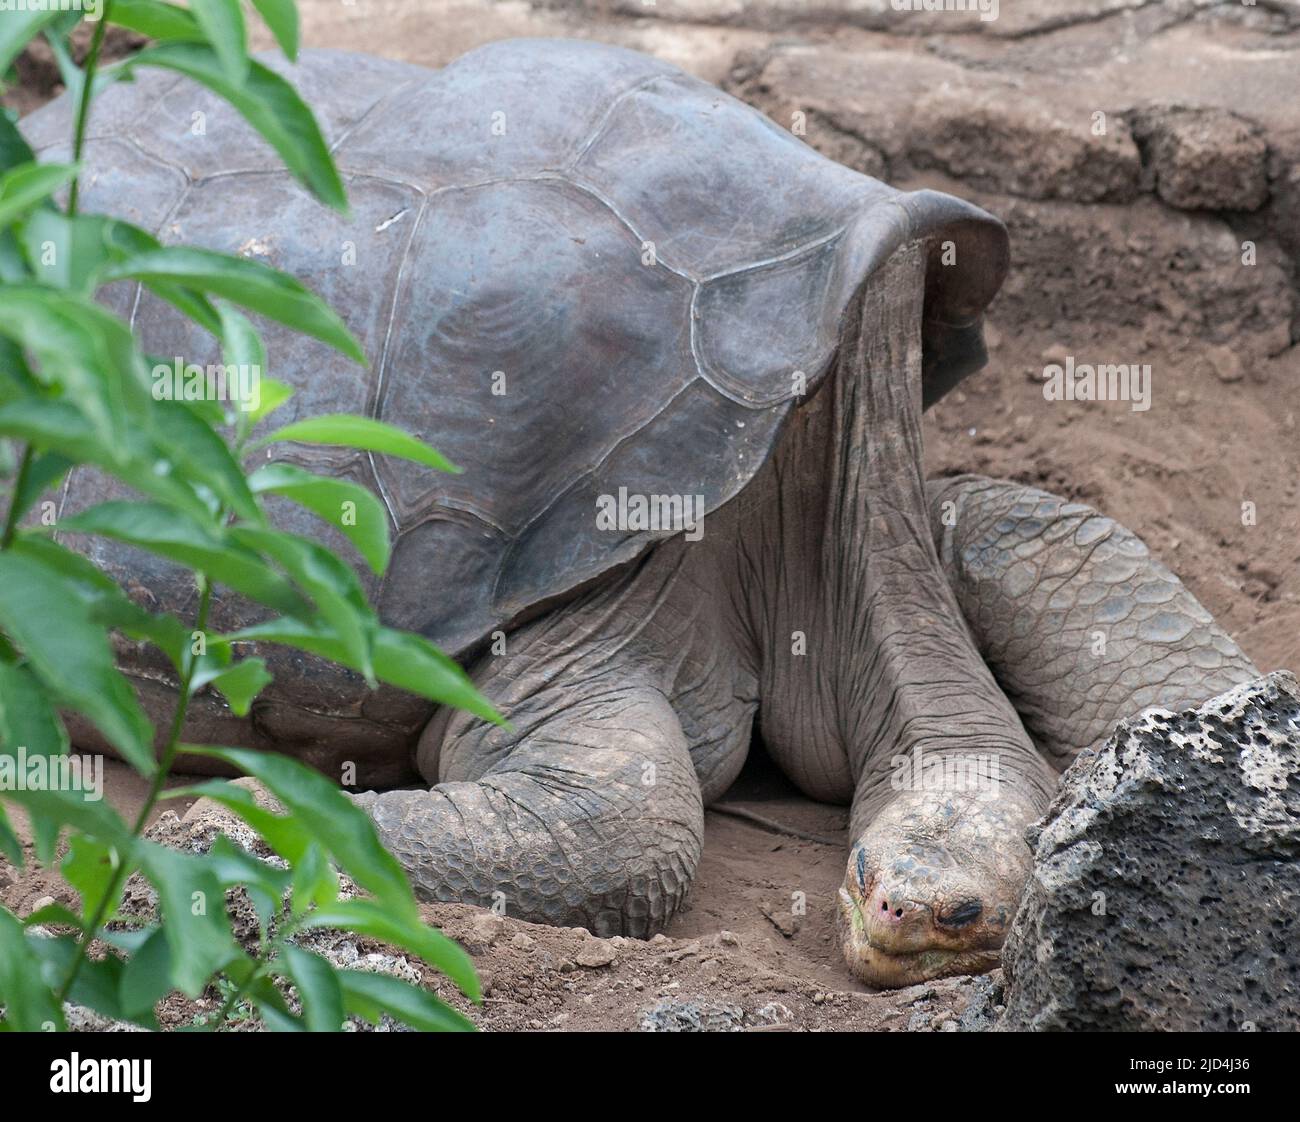 Lonesome George, das einzige erhaltene Exemplar der Riesenschildkröte der Art Chelonoidis nigra abingdoni, das auf der Insel Pinta, Gala, gefunden wurde Stockfoto